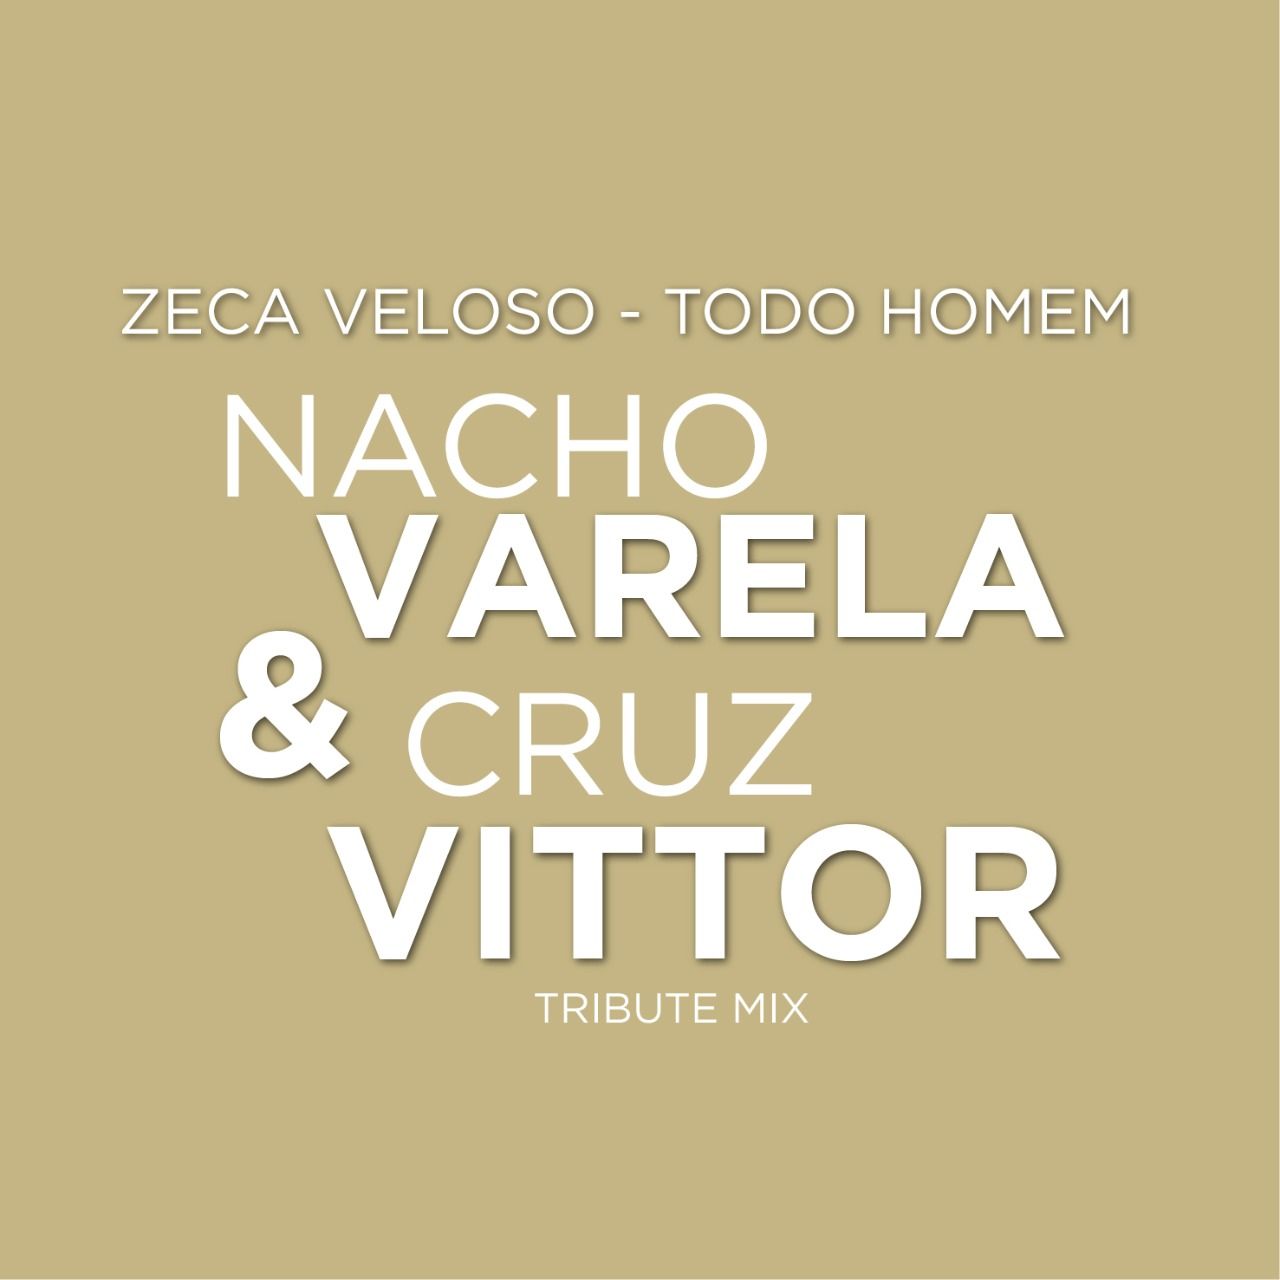 Eroflueden Zeca Veloso - Todo Homem (Nacho Varela & Cruz Vittor Tribute Mix) [Free Download]